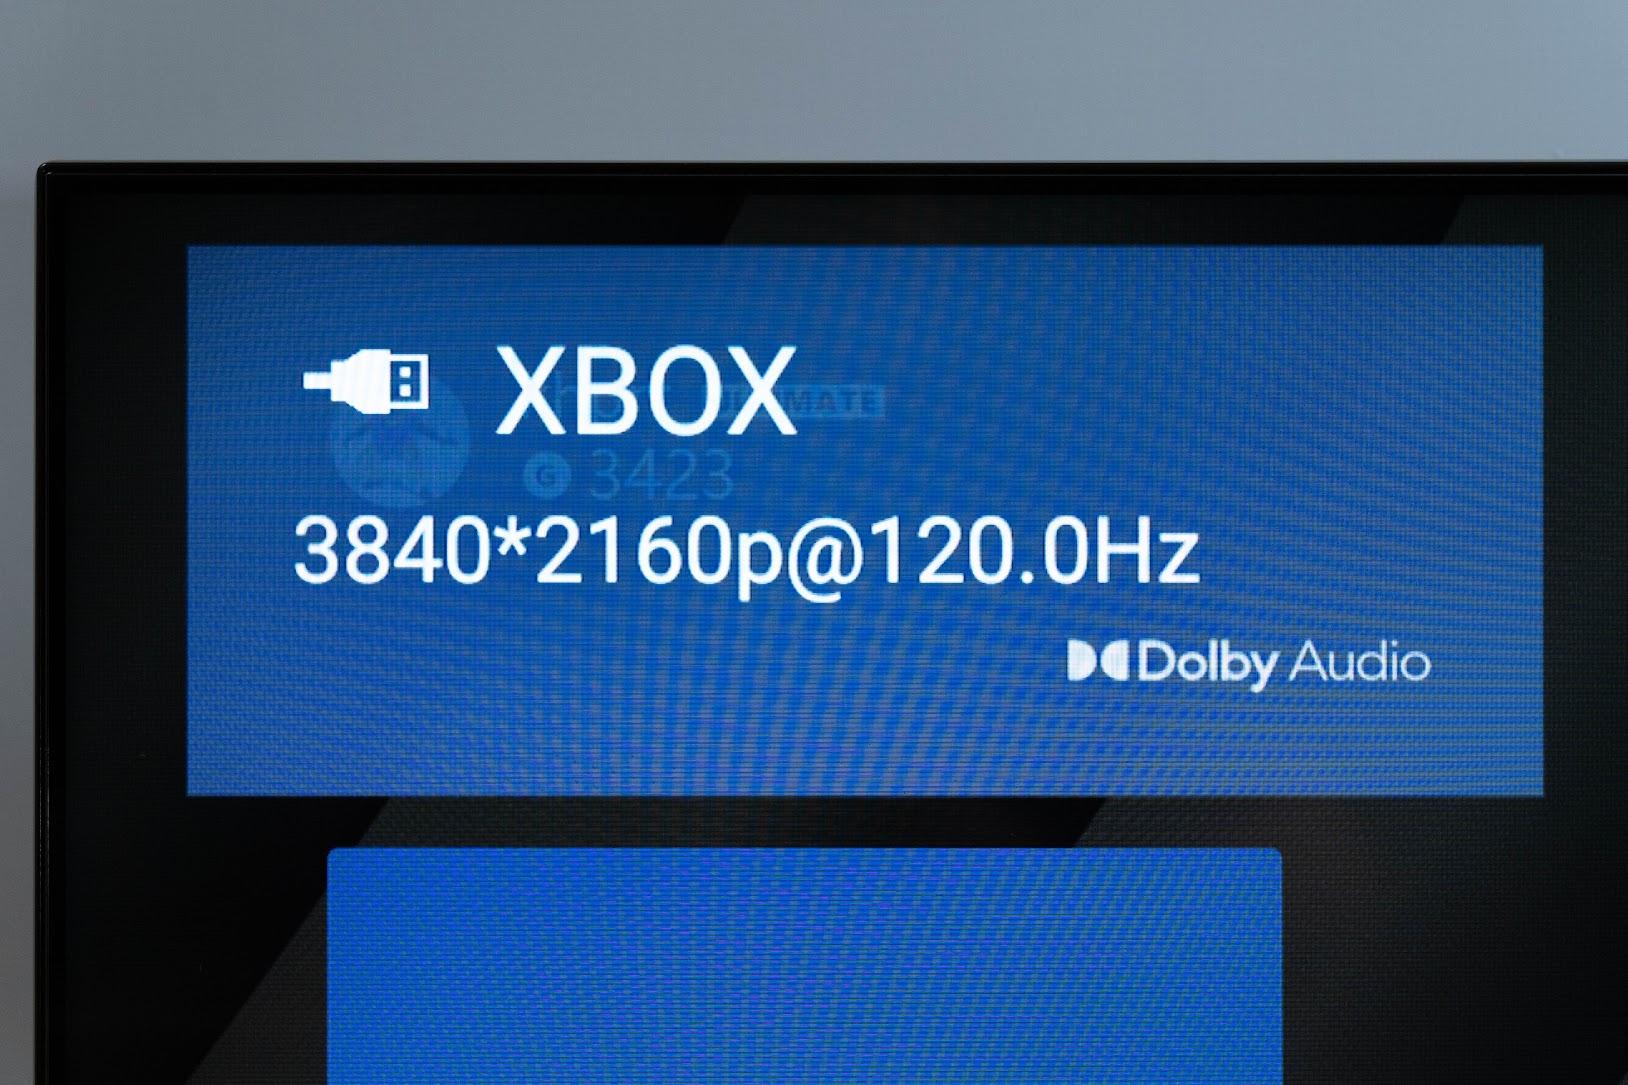 東芝之最 2021 旗艦 TOSHIBA Z770 4K AI QLED 火箭炮重低音 Android TV 旗艦電視 開箱評測｜HDMI 2.1 / Dolby Vision IQ / Dolby Atmos｜3年保固｜科技狗 - 4K HDR, 4K 電視, 4K量子電視, Dolby Atmos, Dolby Vision IQ, HDMI 2.1, PTT, TOSHIBA, TOSHIBA Z770, 東芝, 評測, 開箱, 開箱評測, 電視開箱 - 科技狗 3C DOG